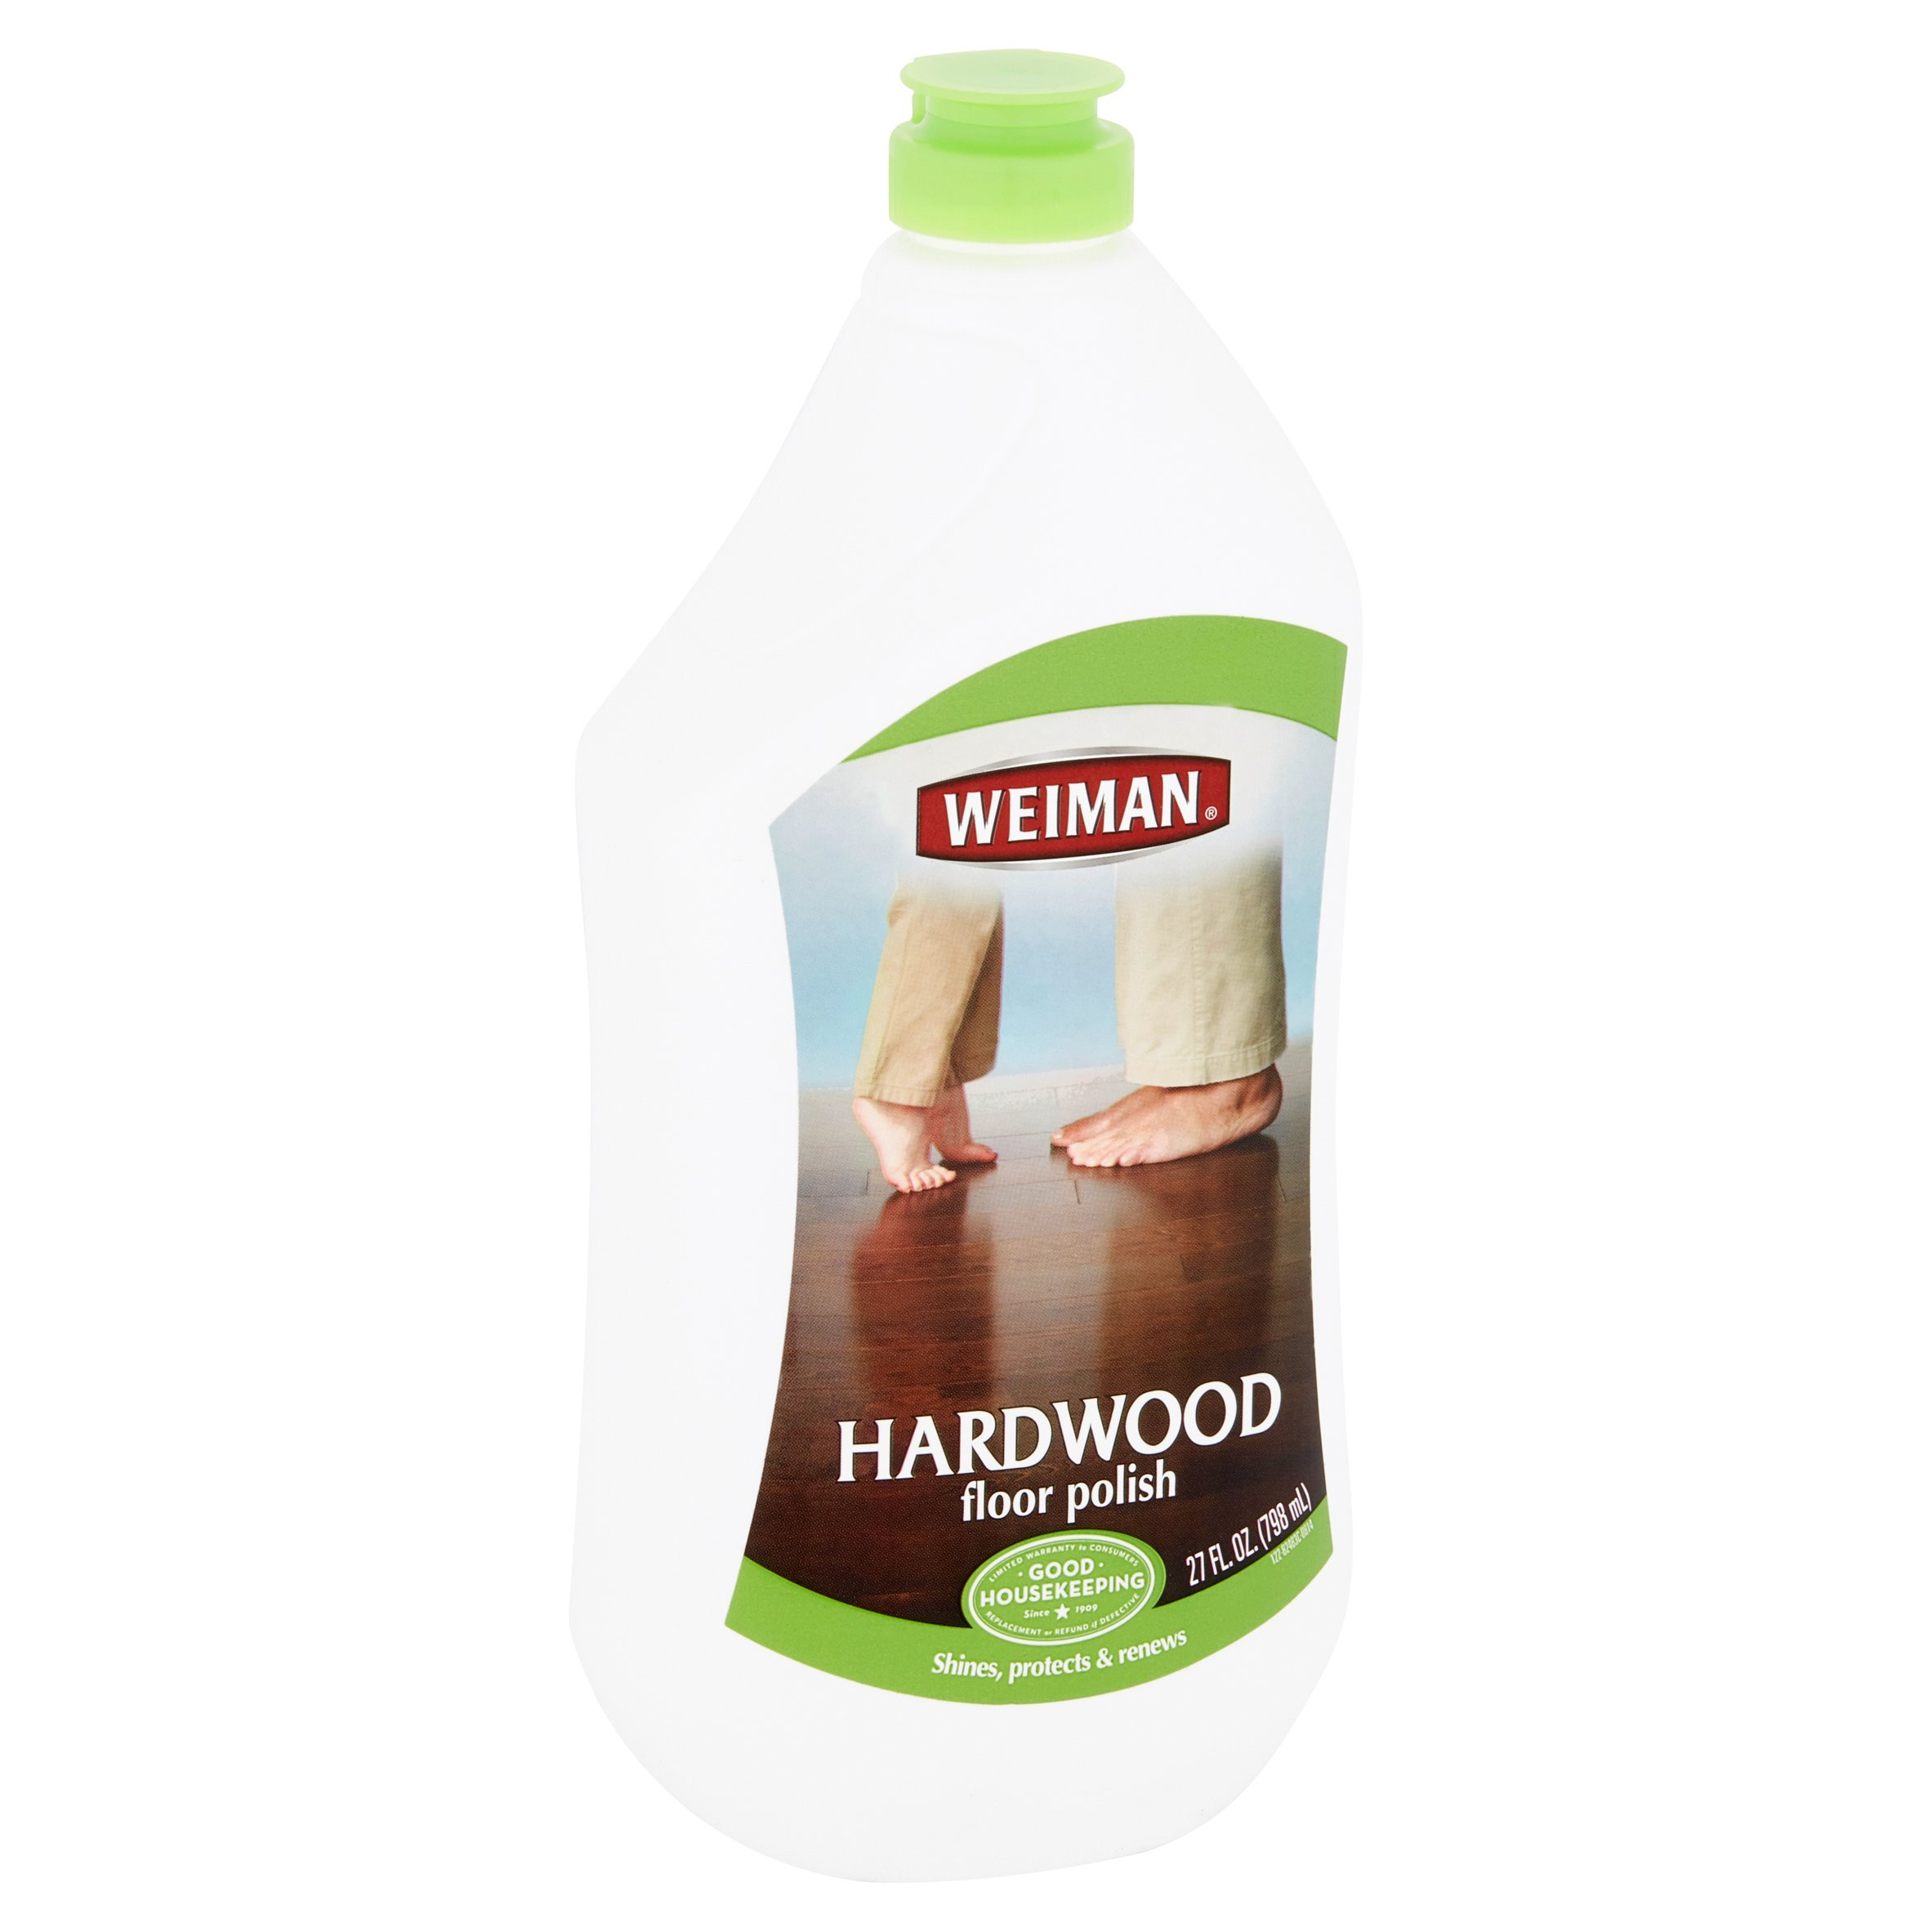 18 Wonderful How to Keep Hardwood Floors Shiny 2024 free download how to keep hardwood floors shiny of weiman hardwood floor polish 27 oz walmart com in e3772481 6ecb 42fd 90cb a6883c38df54 1 14deb9d4c153dceb9f65f9a3409d6b3c